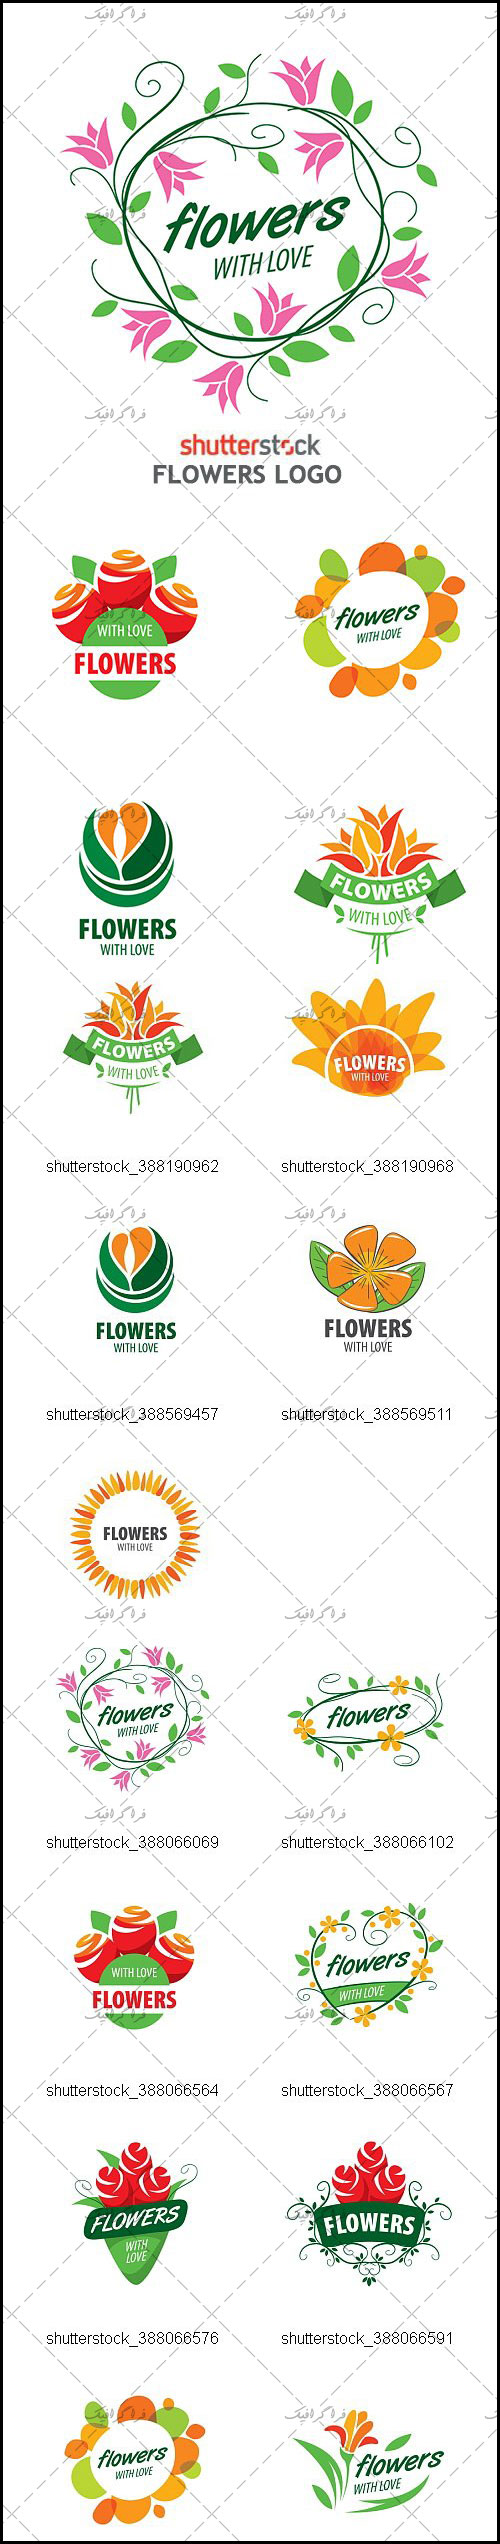 دانلود لوگو های گل - Flowers Logos - شماره 2